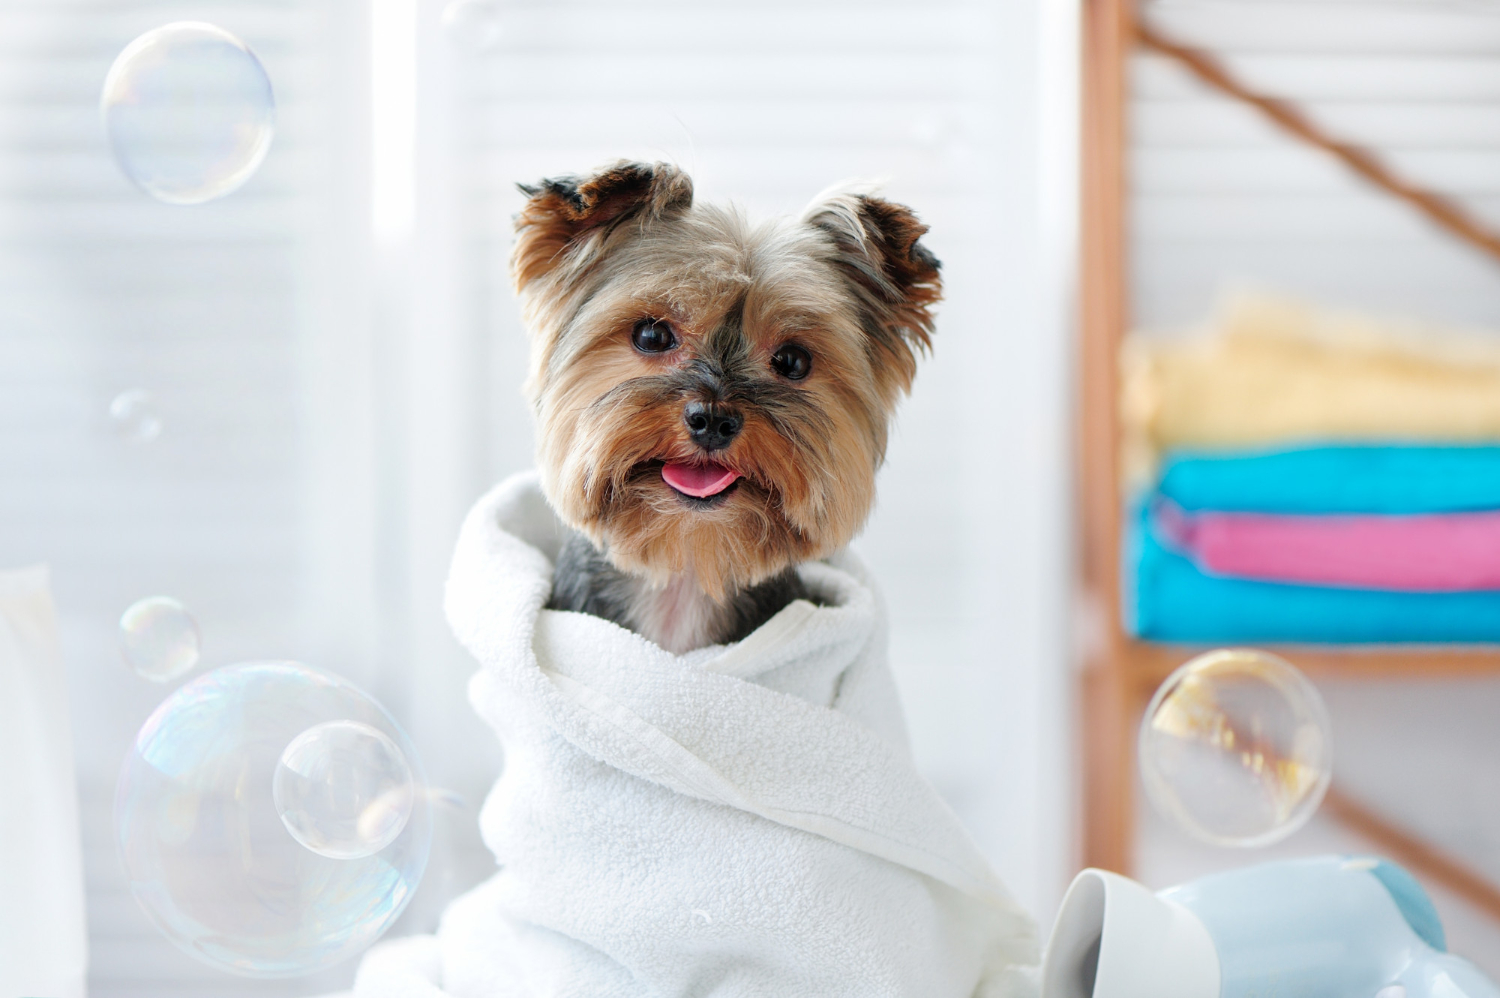 Afinal, sabão de coco é bom ou não para dar banho em cachorros?